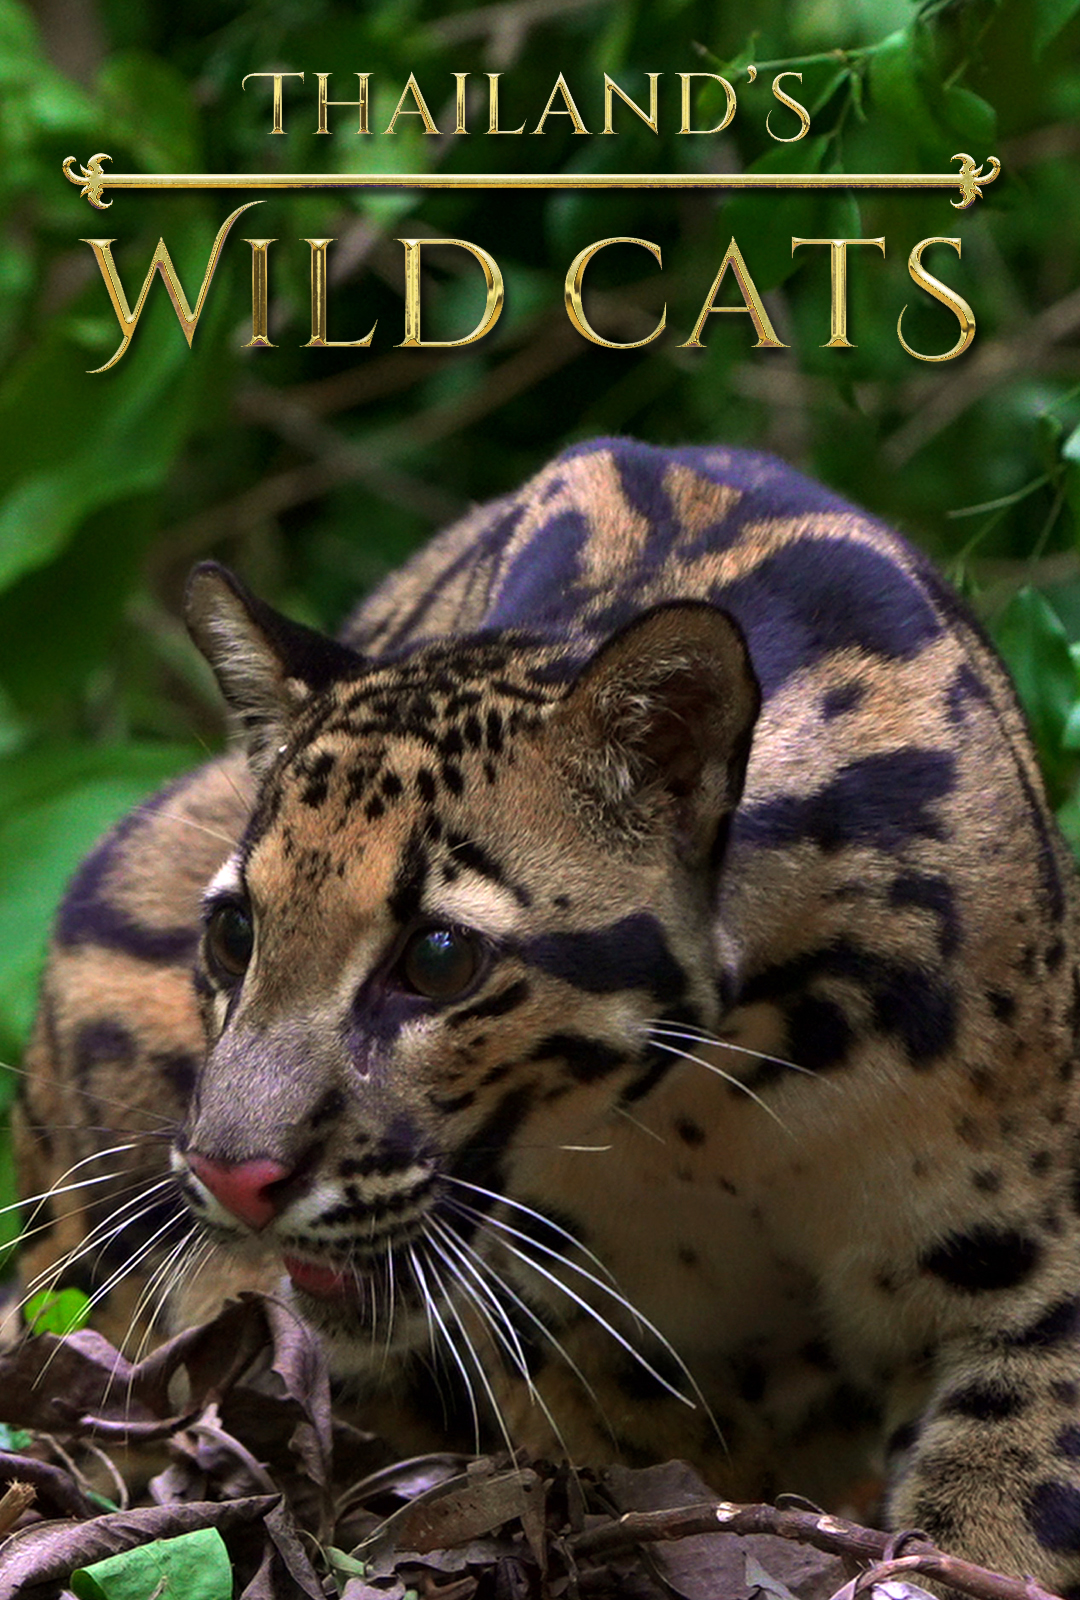 ดูหนังออนไลน์ฟรี Thailands Wild Cats (2021) หนังเต็มเรื่อง หนังมาสเตอร์ ดูหนังHD ดูหนังออนไลน์ ดูหนังใหม่